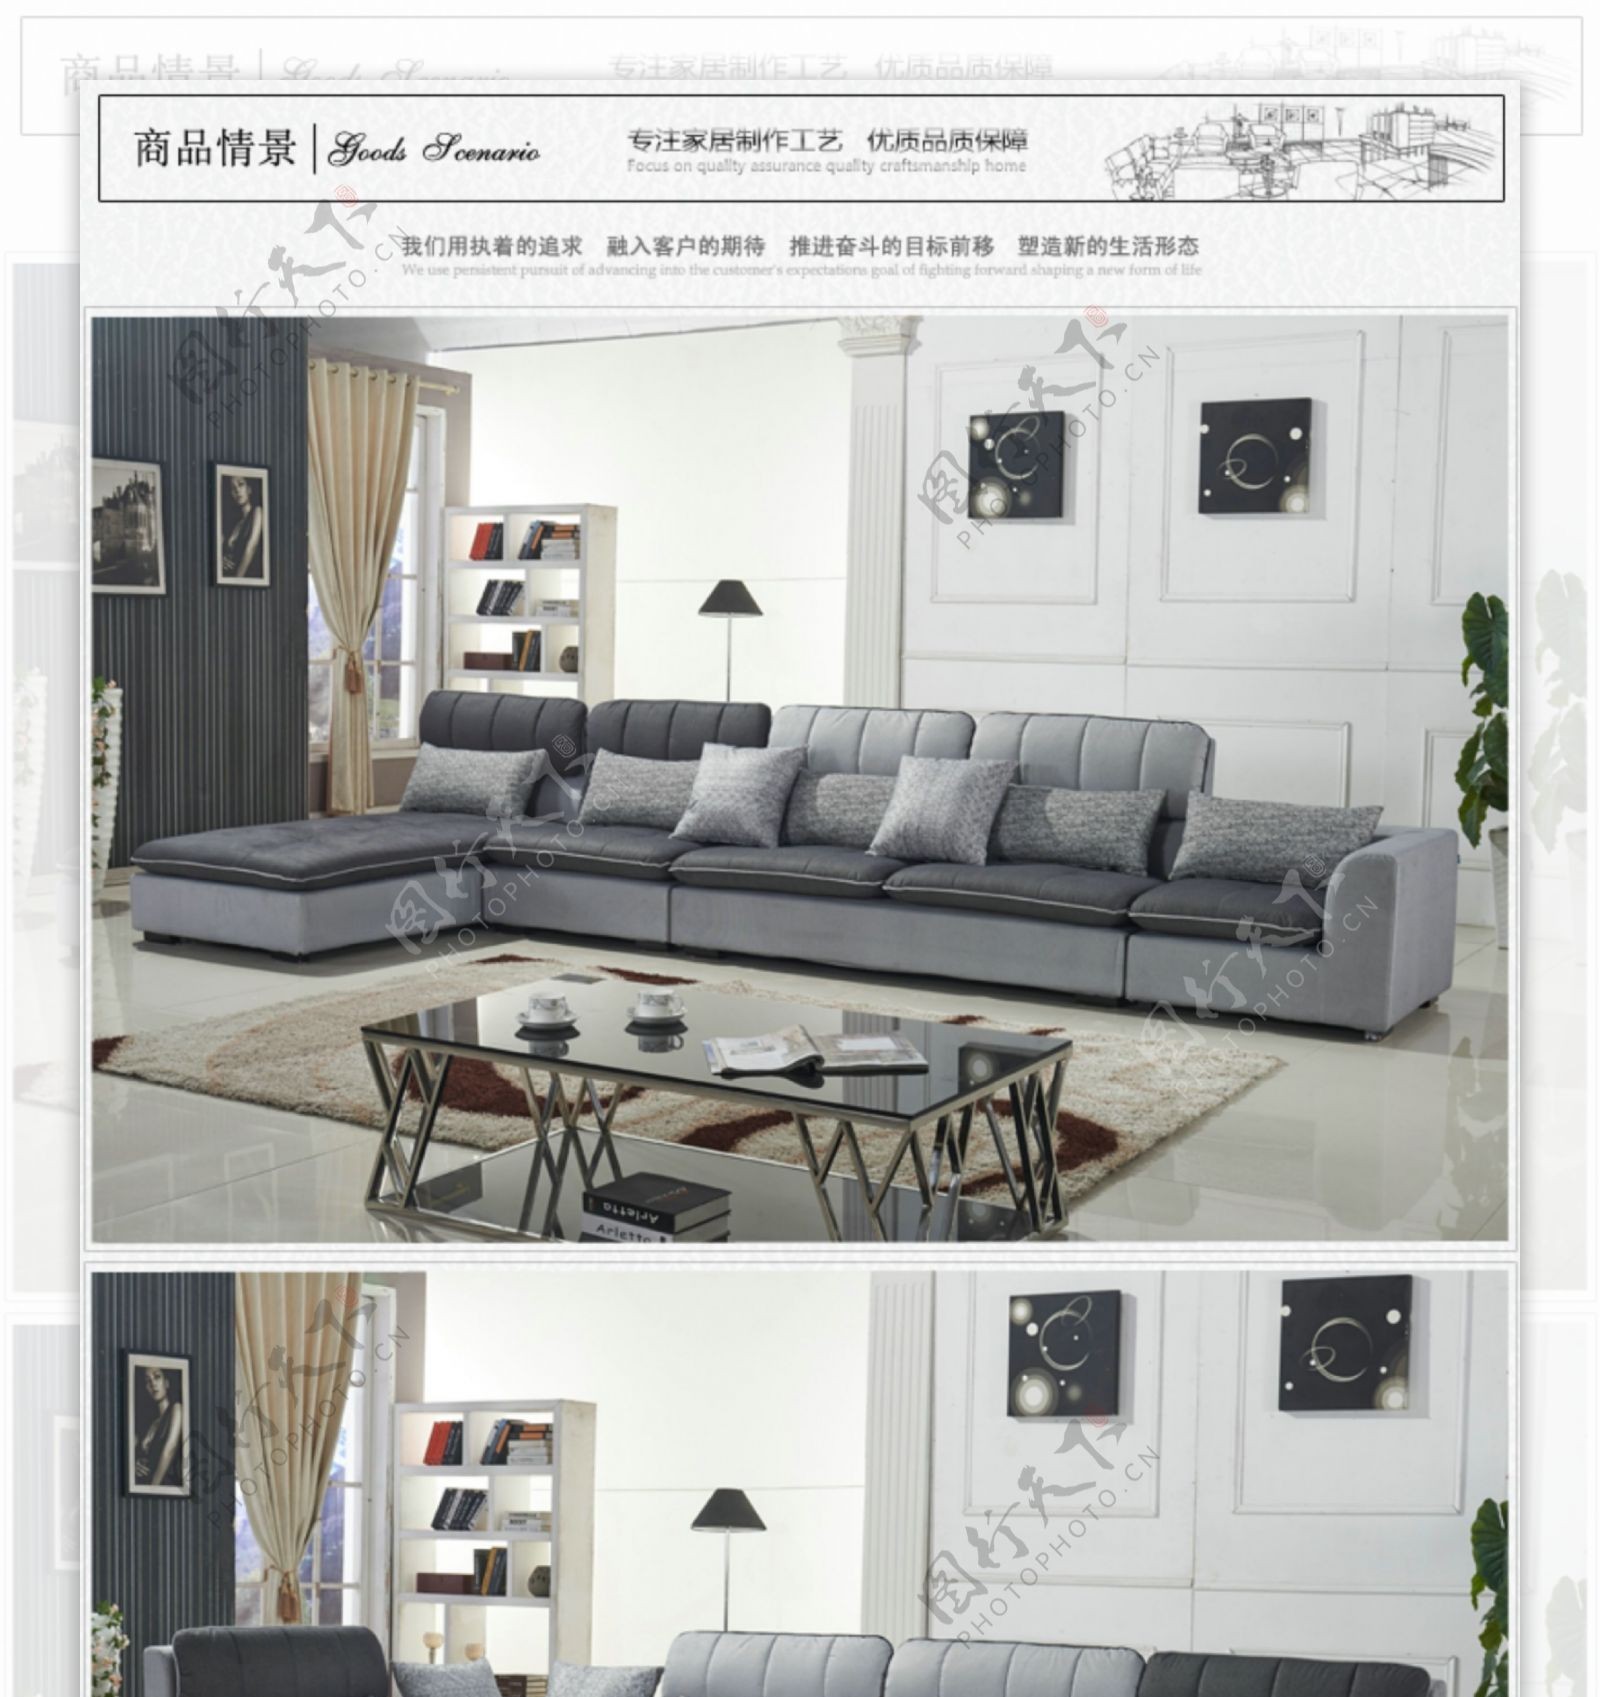 家具布艺沙发产品描述详情页